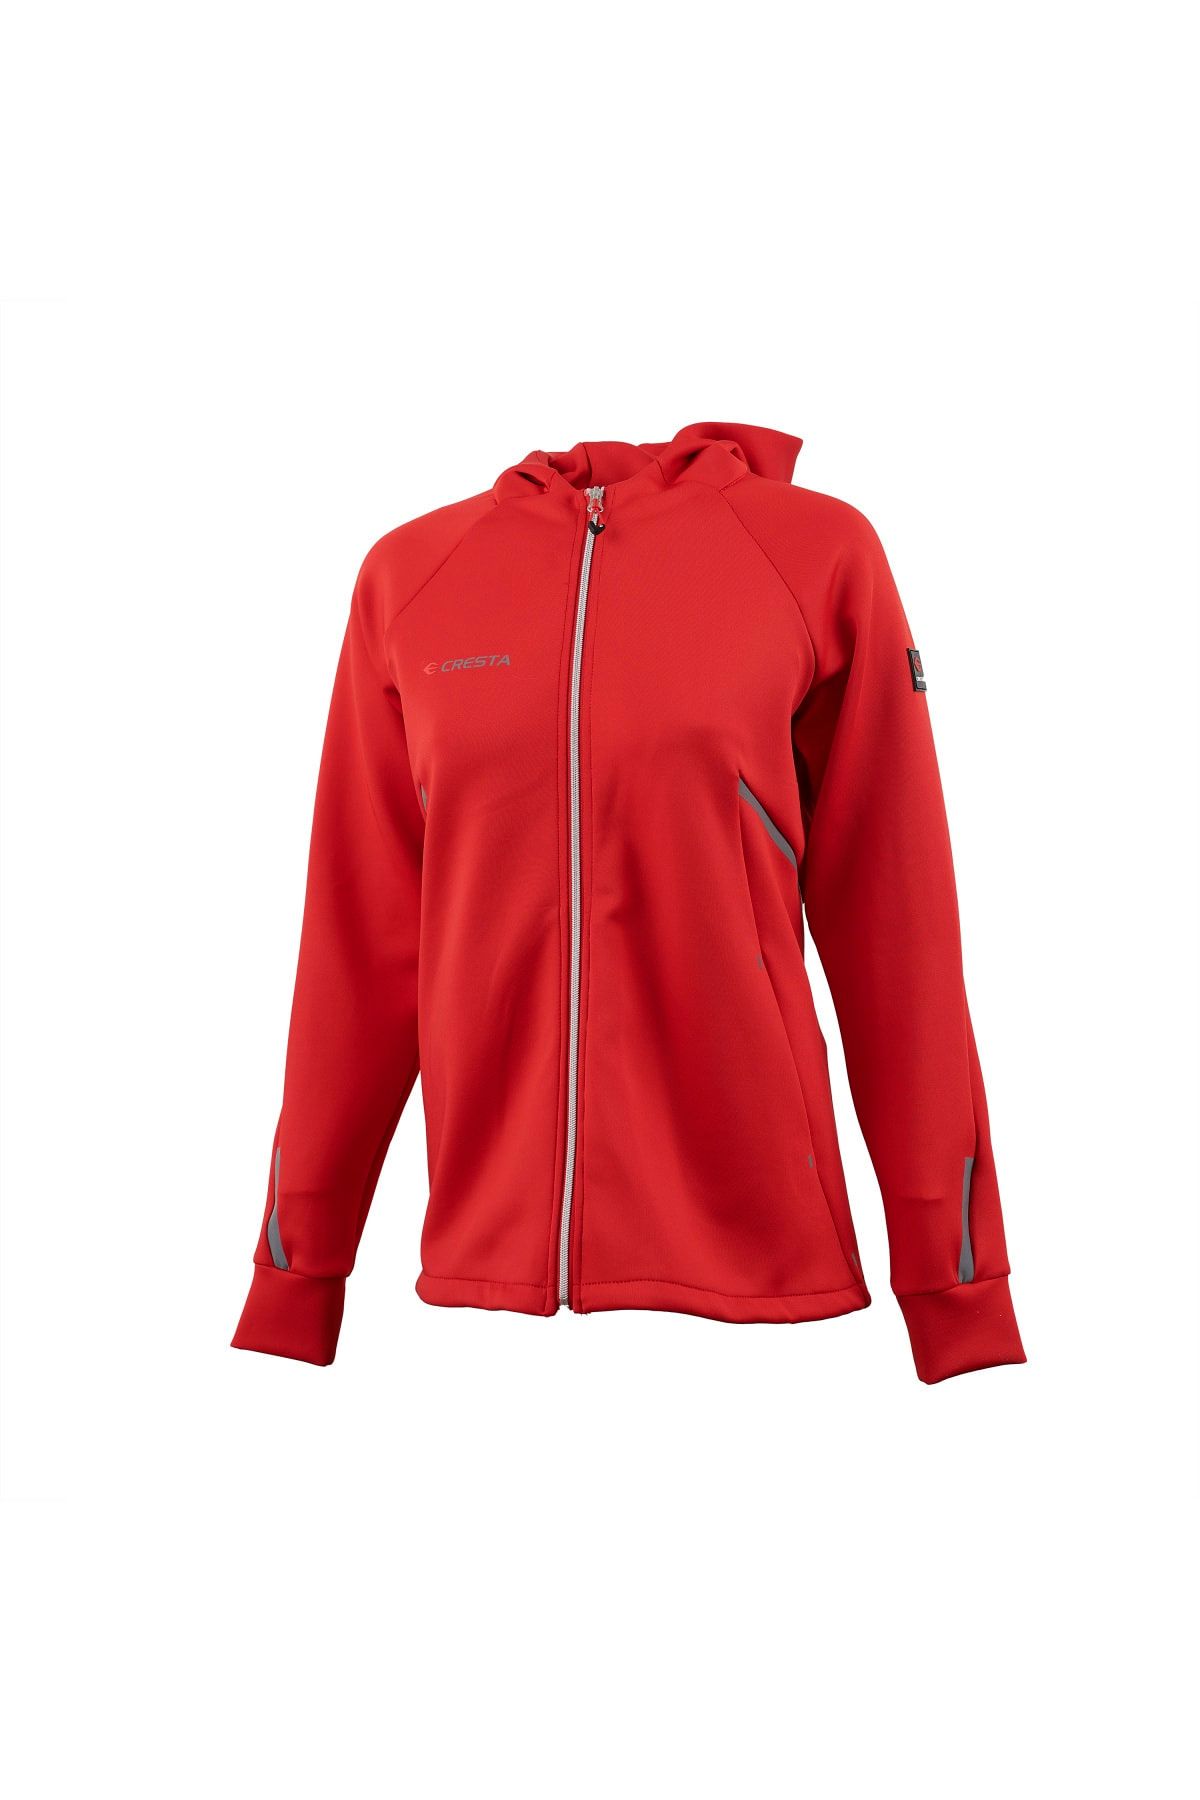 Cresta Kadın Kırmızı Outdoor Reflektör Baskılı Kapüşonlu Hafif Ceket